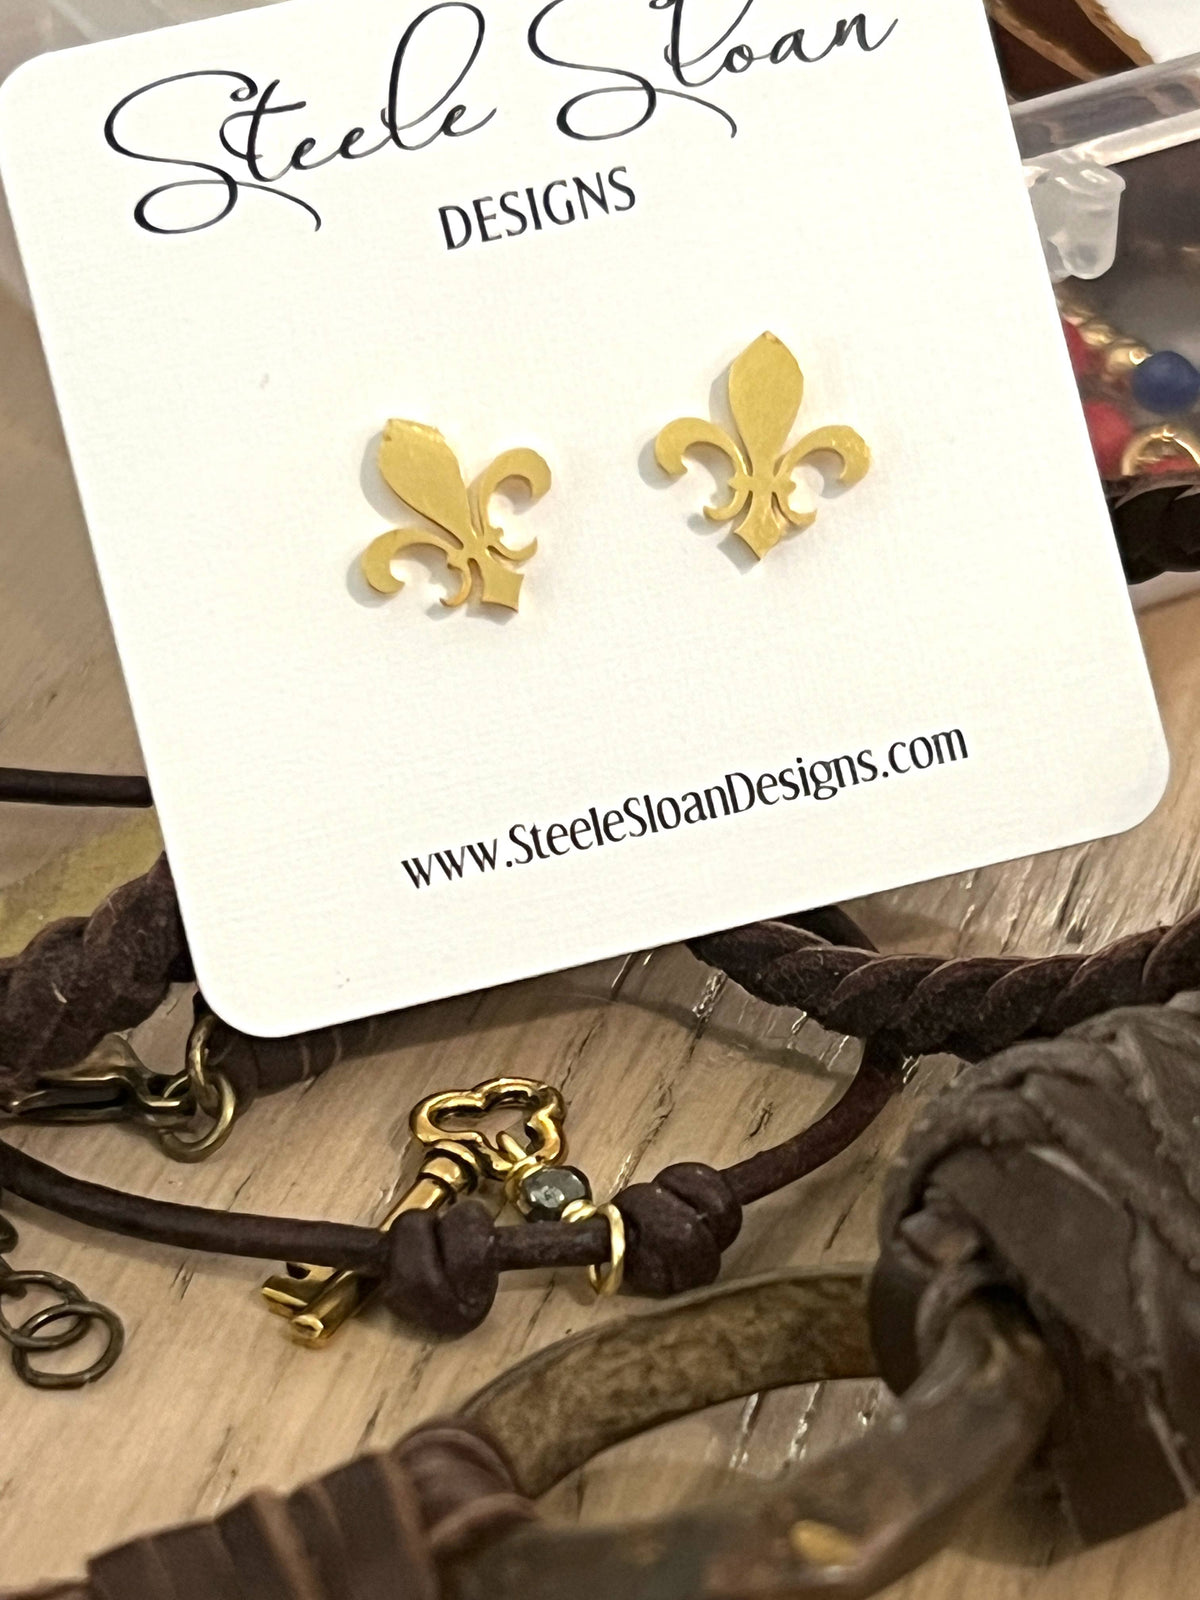 Fleur De Lis Gold Stud Earrings, Hypoallergenic Earrings